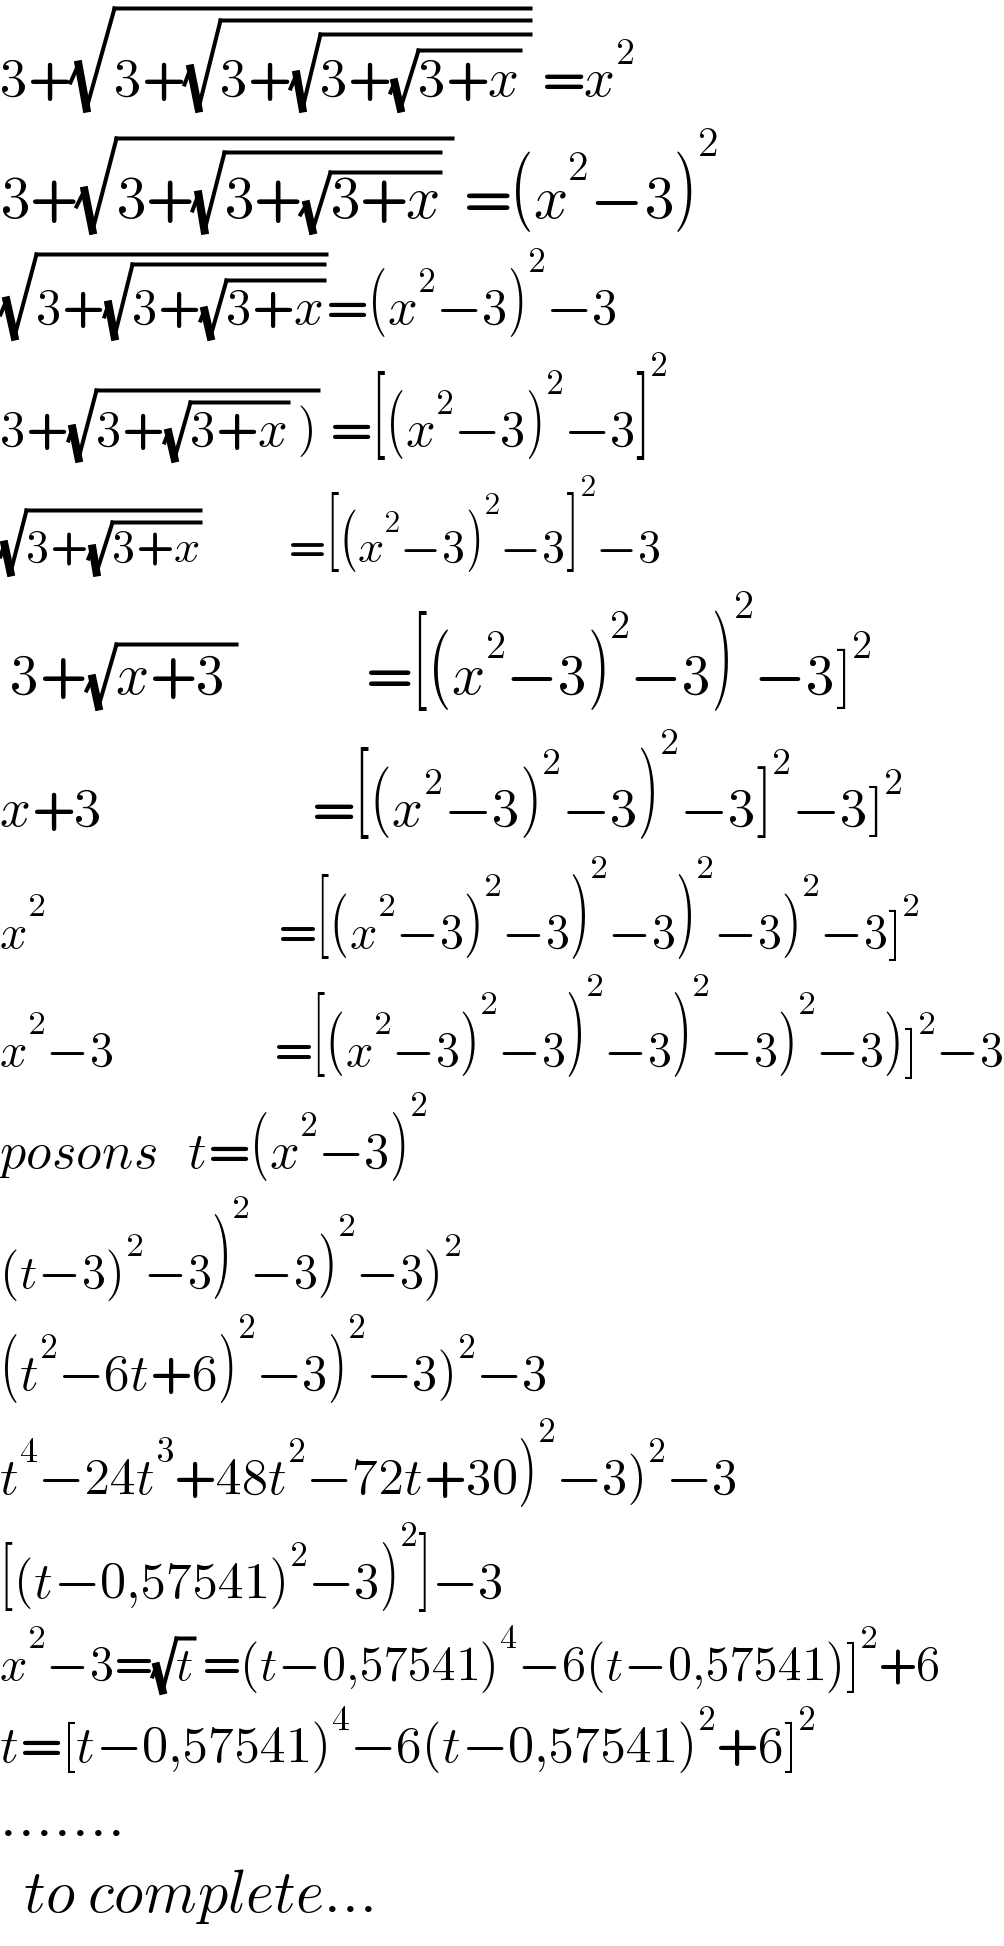 3+(√(3+(√(3+(√(3+(√(3+x)) )))))) =x^2   3+(√(3+(√(3+(√(3+x)))) )) =(x^2 −3)^2   (√(3+(√(3+(√(3+x))))))=(x^2 −3)^2 −3  3+(√(3+(√(3+x)) ))) =[(x^2 −3)^2 −3]^2   (√(3+(√(3+x))))           =[(x^2 −3)^2 −3]^2 −3   3+(√(x+3 ))             =[(x^2 −3)^2 −3)^2 −3]^2   x+3                     =[(x^2 −3)^2 −3)^2 −3]^2 −3]^2   x^2                              =[(x^2 −3)^2 −3)^2 −3)^2 −3)^2 −3]^2   x^2 −3                    =[(x^2 −3)^2 −3)^2 −3)^2 −3)^2 −3)]^2 −3  posons   t=(x^2 −3)^2   (t−3)^2 −3)^2 −3)^2 −3)^2   (t^2 −6t+6)^2 −3)^2 −3)^2 −3  t^4 −24t^3 +48t^2 −72t+30)^2 −3)^2 −3  [(t−0,57541)^2 −3)^2 ]−3^   x^2 −3=(√t) =(t−0,57541)^4 −6(t−0,57541)]^2 +6  t=[t−0,57541)^4 −6(t−0,57541)^2 +6]^2   .......    to complete...    